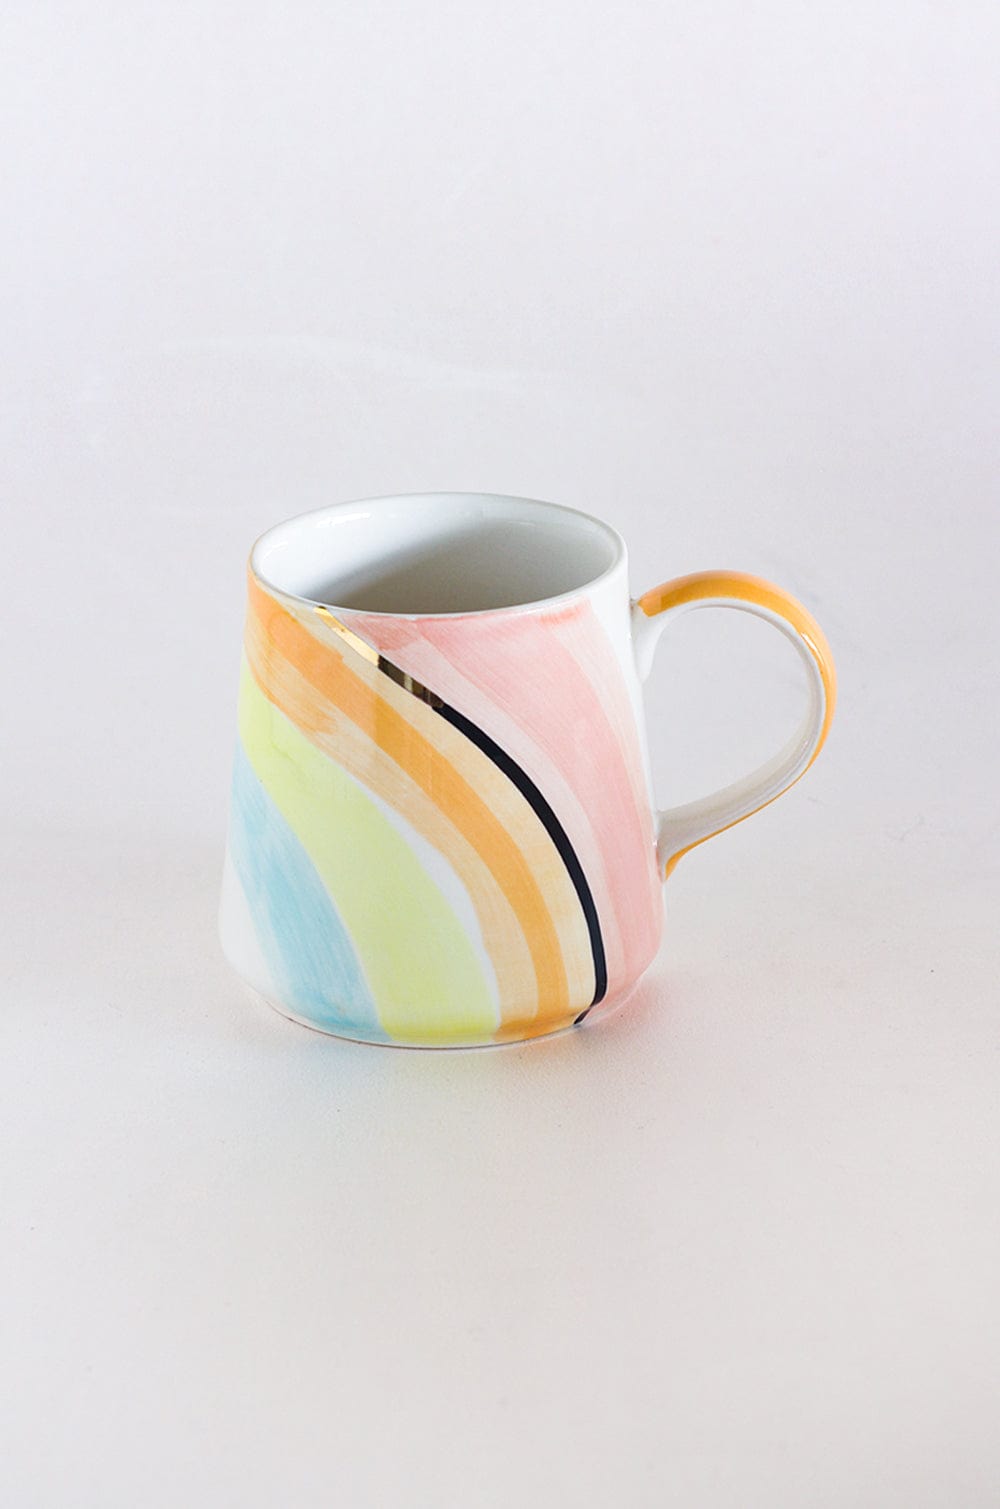 Stripes - Serenity Stripes Handpainted Ceramic Mug